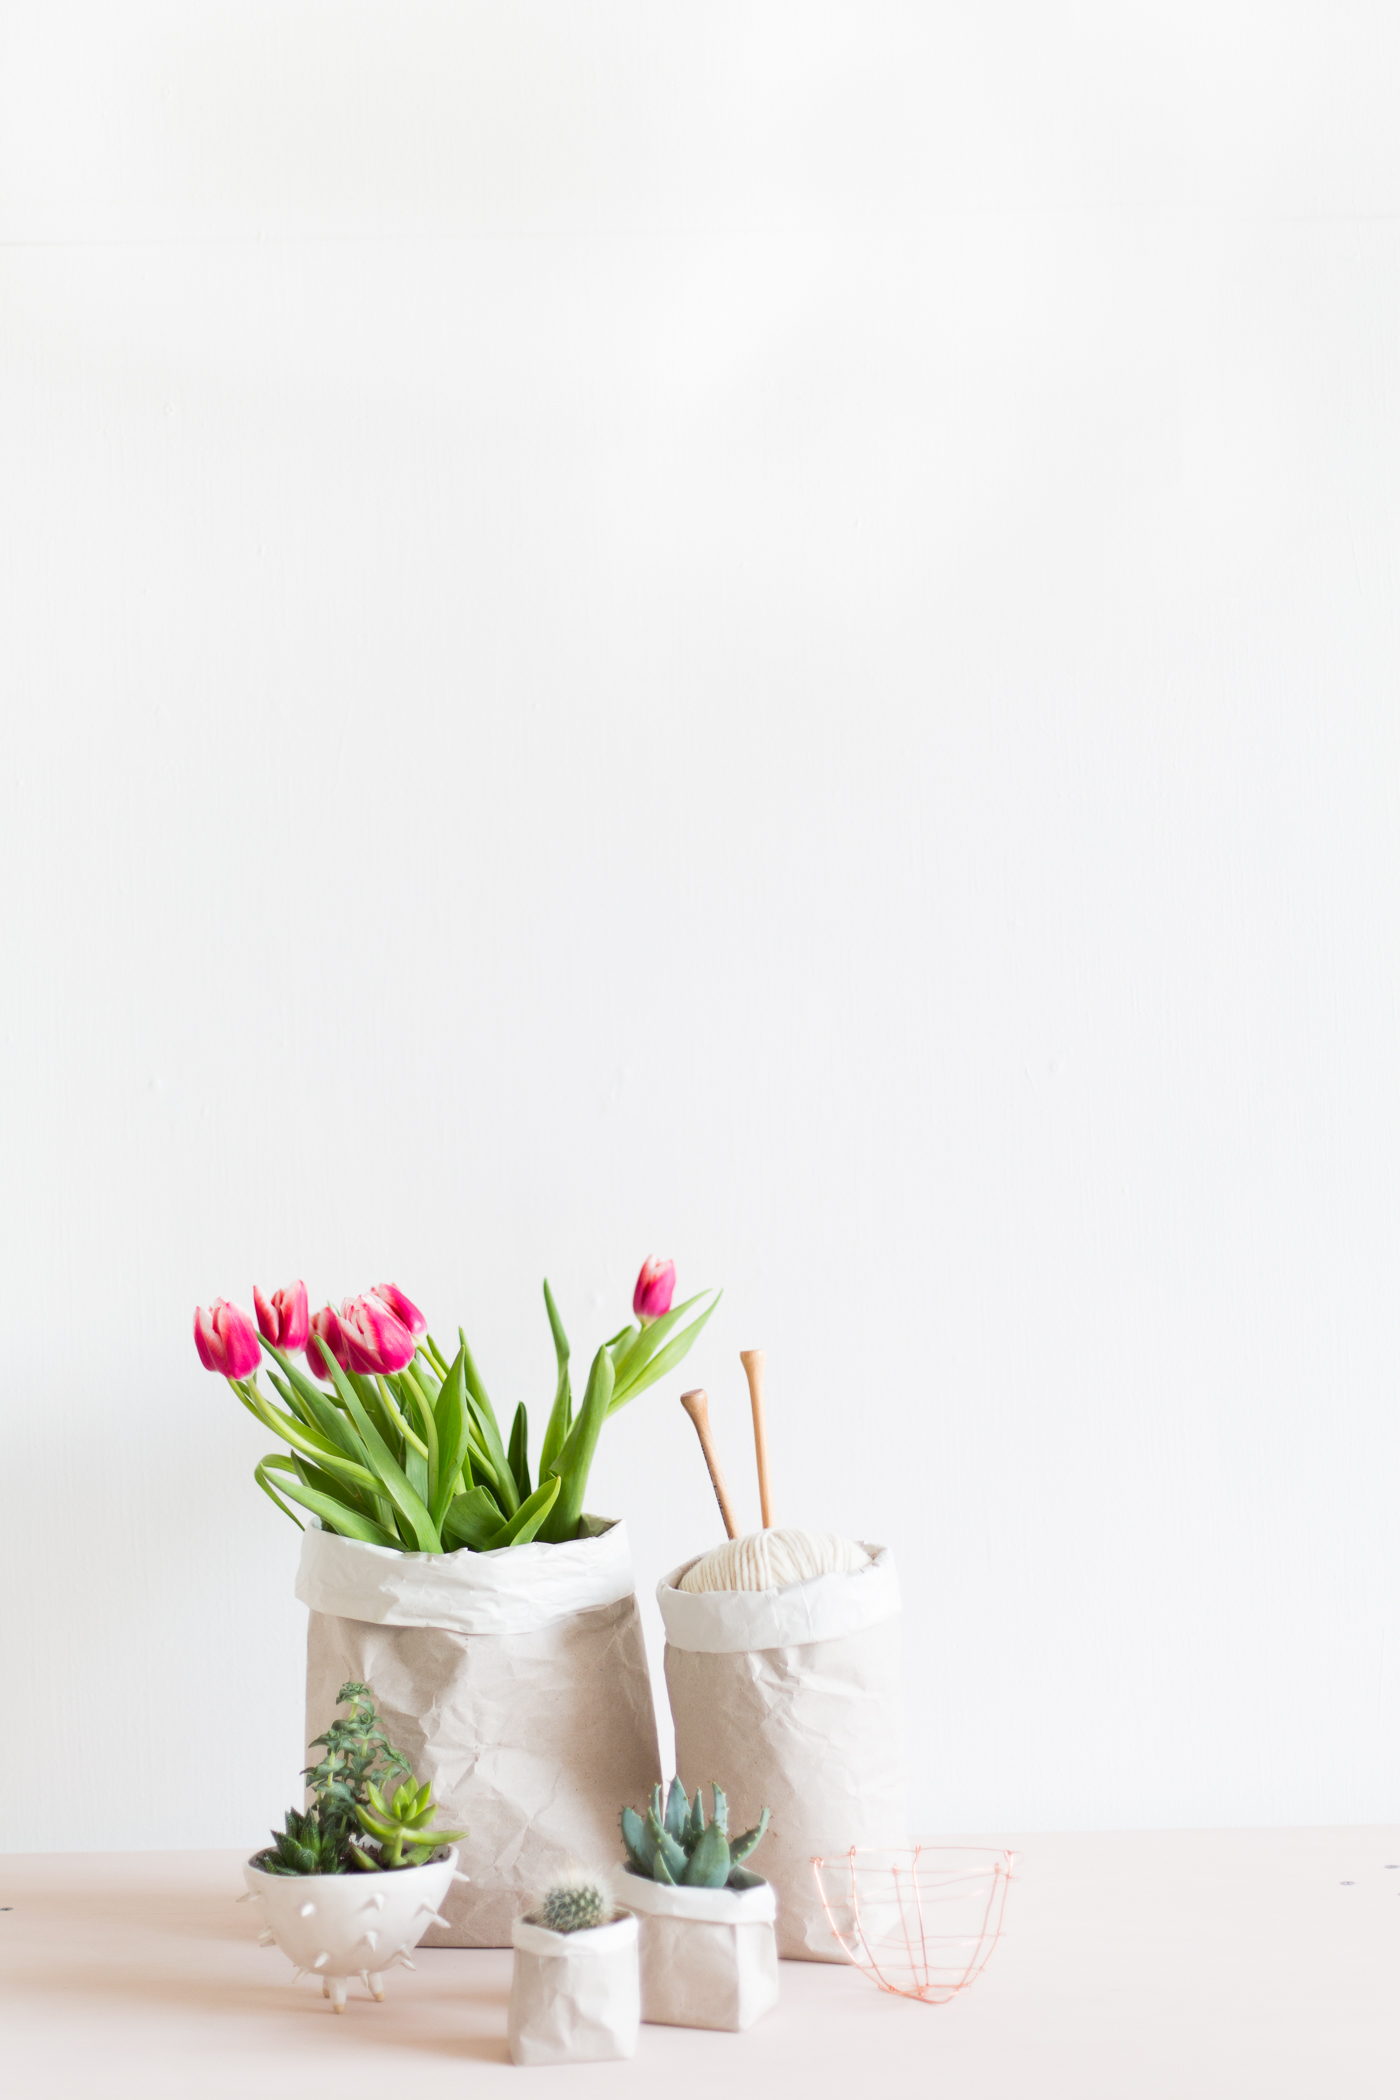 DIY Packing Paper Sack Planters | @fallfordiy